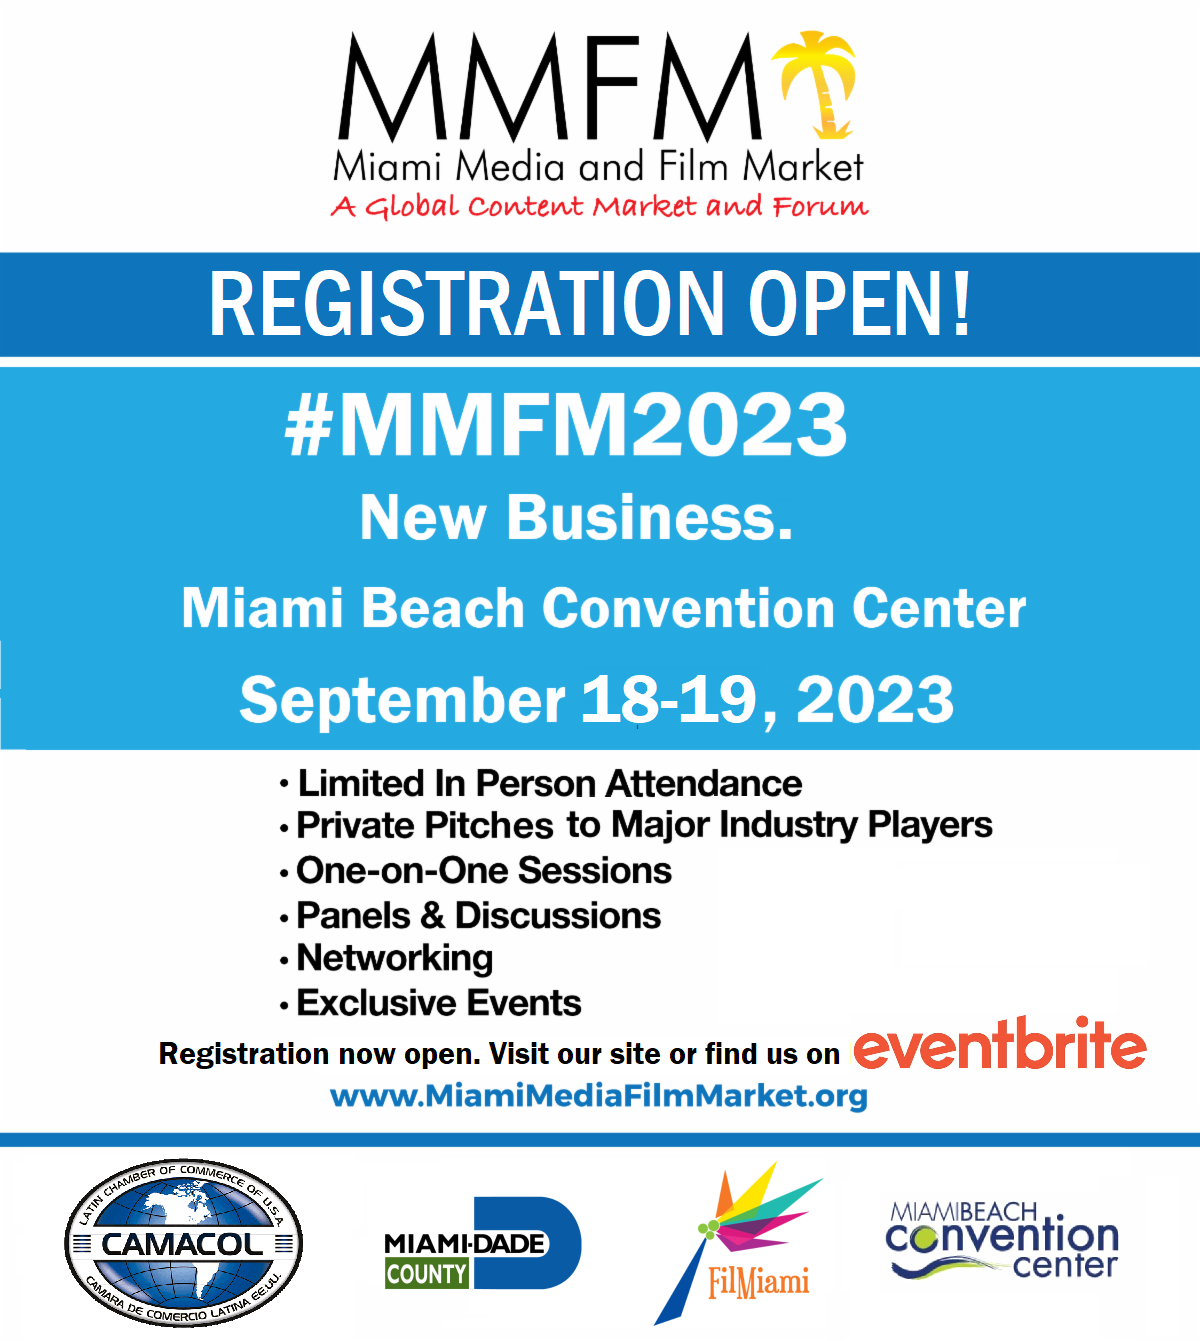 MMFM 2023